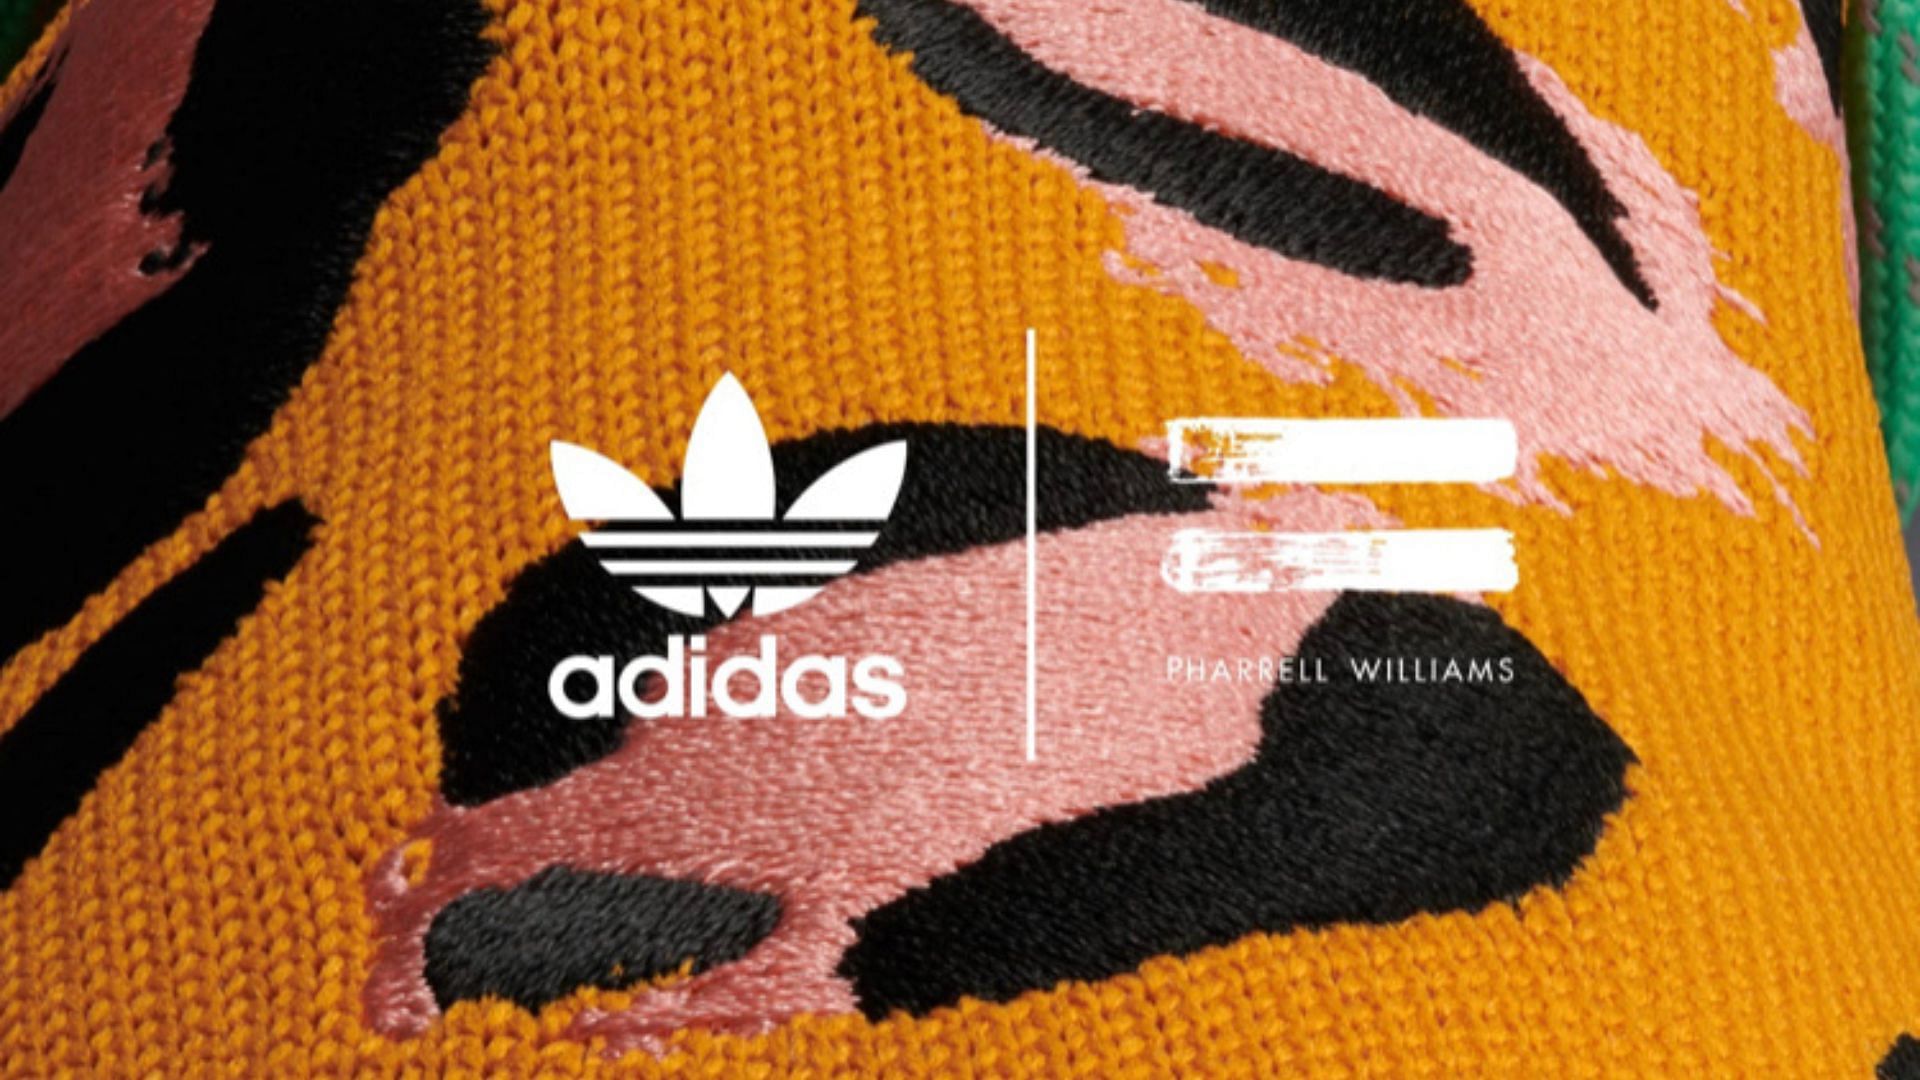 Pharrell Williams x Adidas Hu NMD sneakers (Image via Adidas)